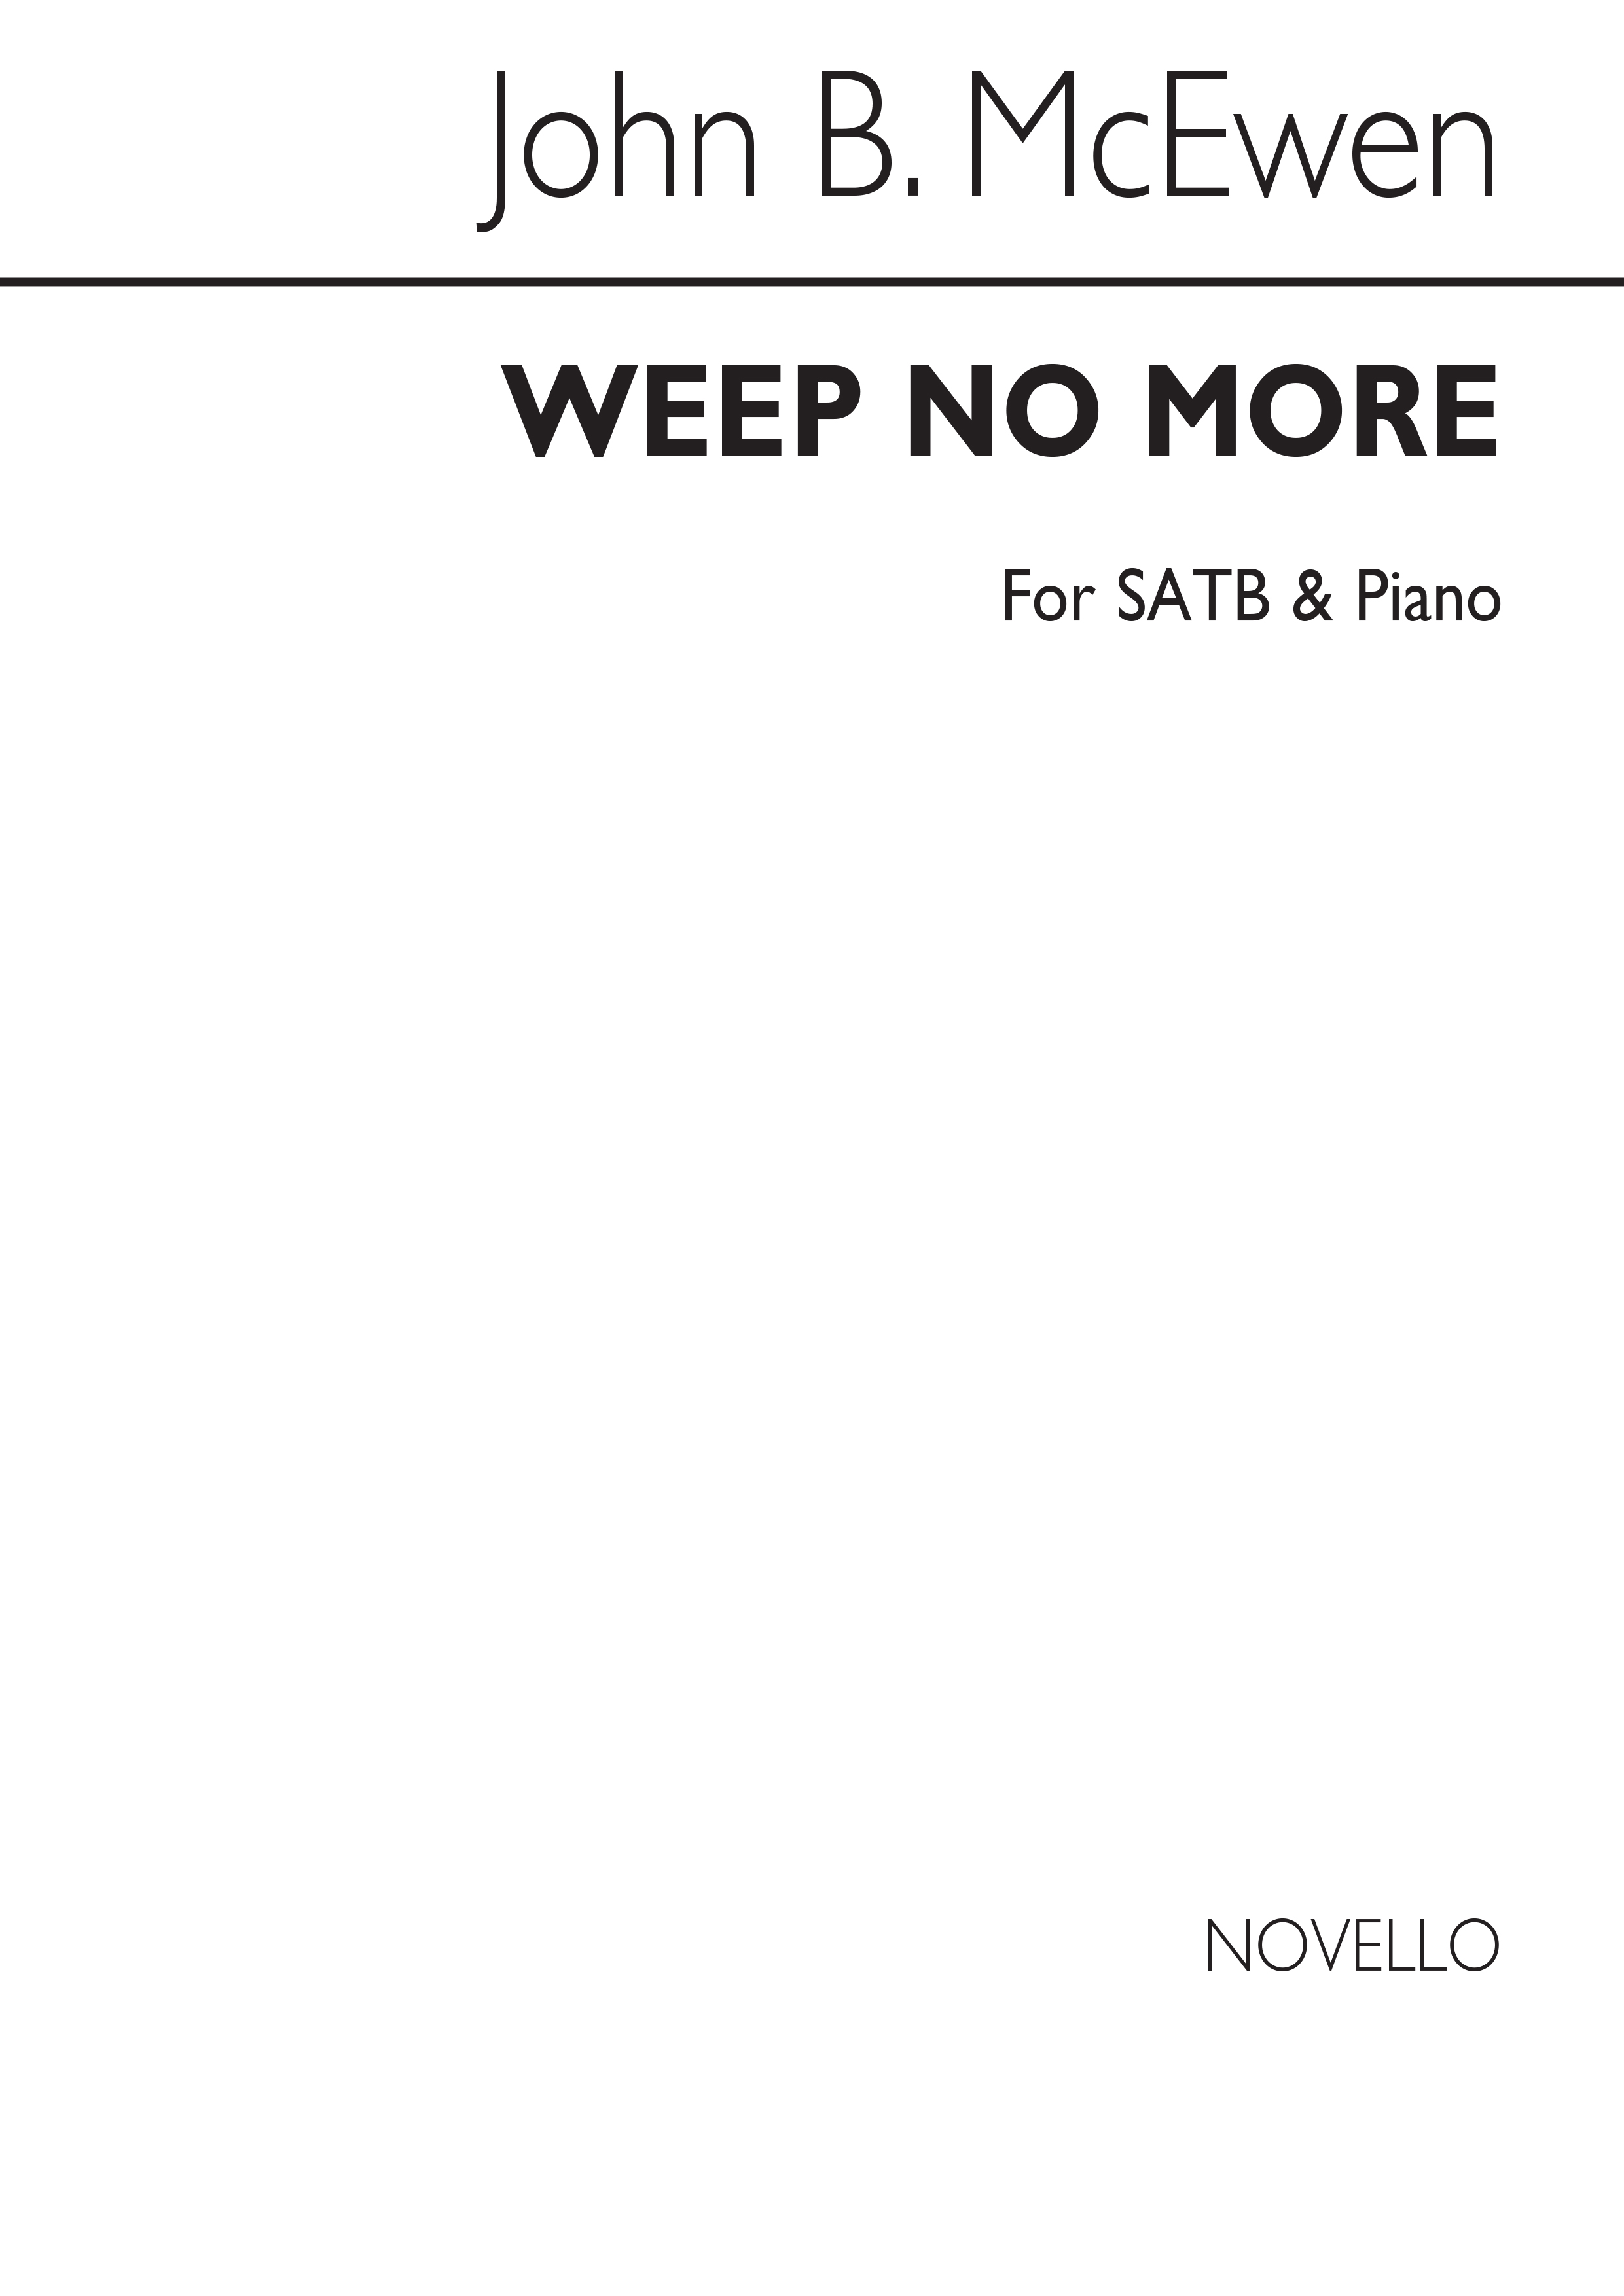 John B. Mcewen: Weep No More Satb/Piano